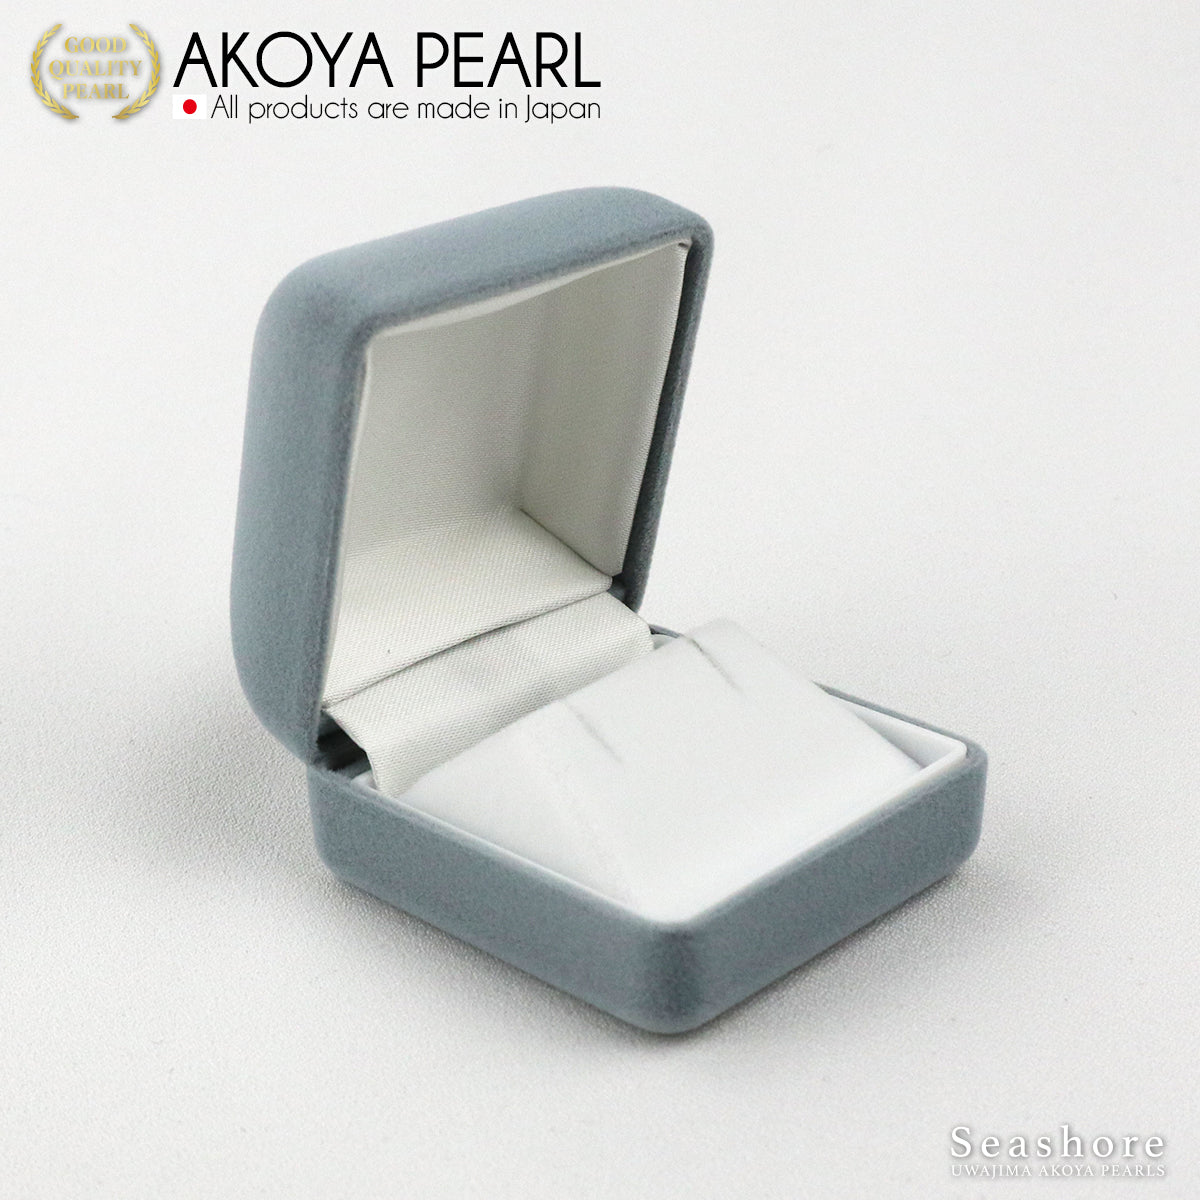 珍珠耳环 耳钉型 白色 [8.0-8.5mm] K18G K14WG Akoya Akoya 珍珠收纳盒 附简约